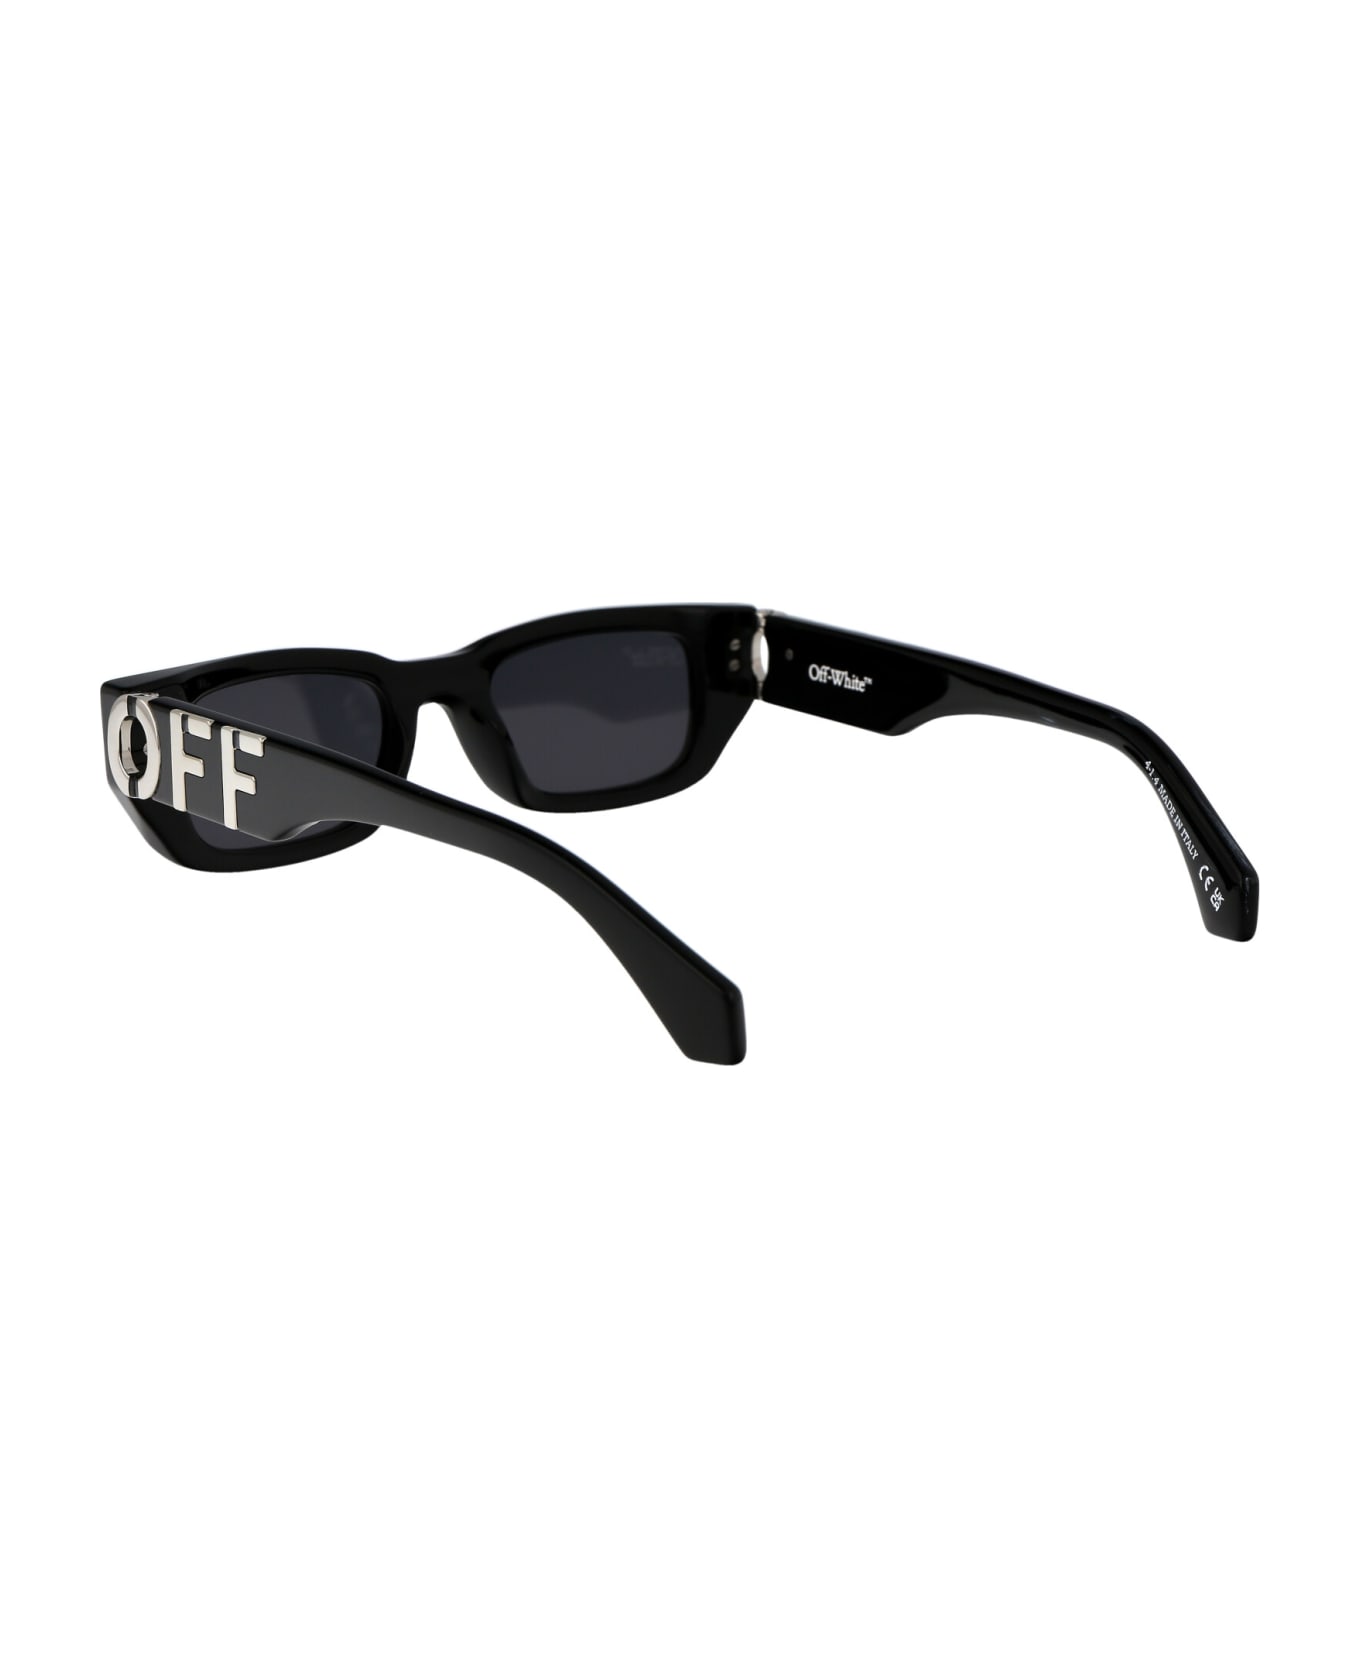 Off-White Fillmore Sunglasses - 1007 BLACK DARK GREY